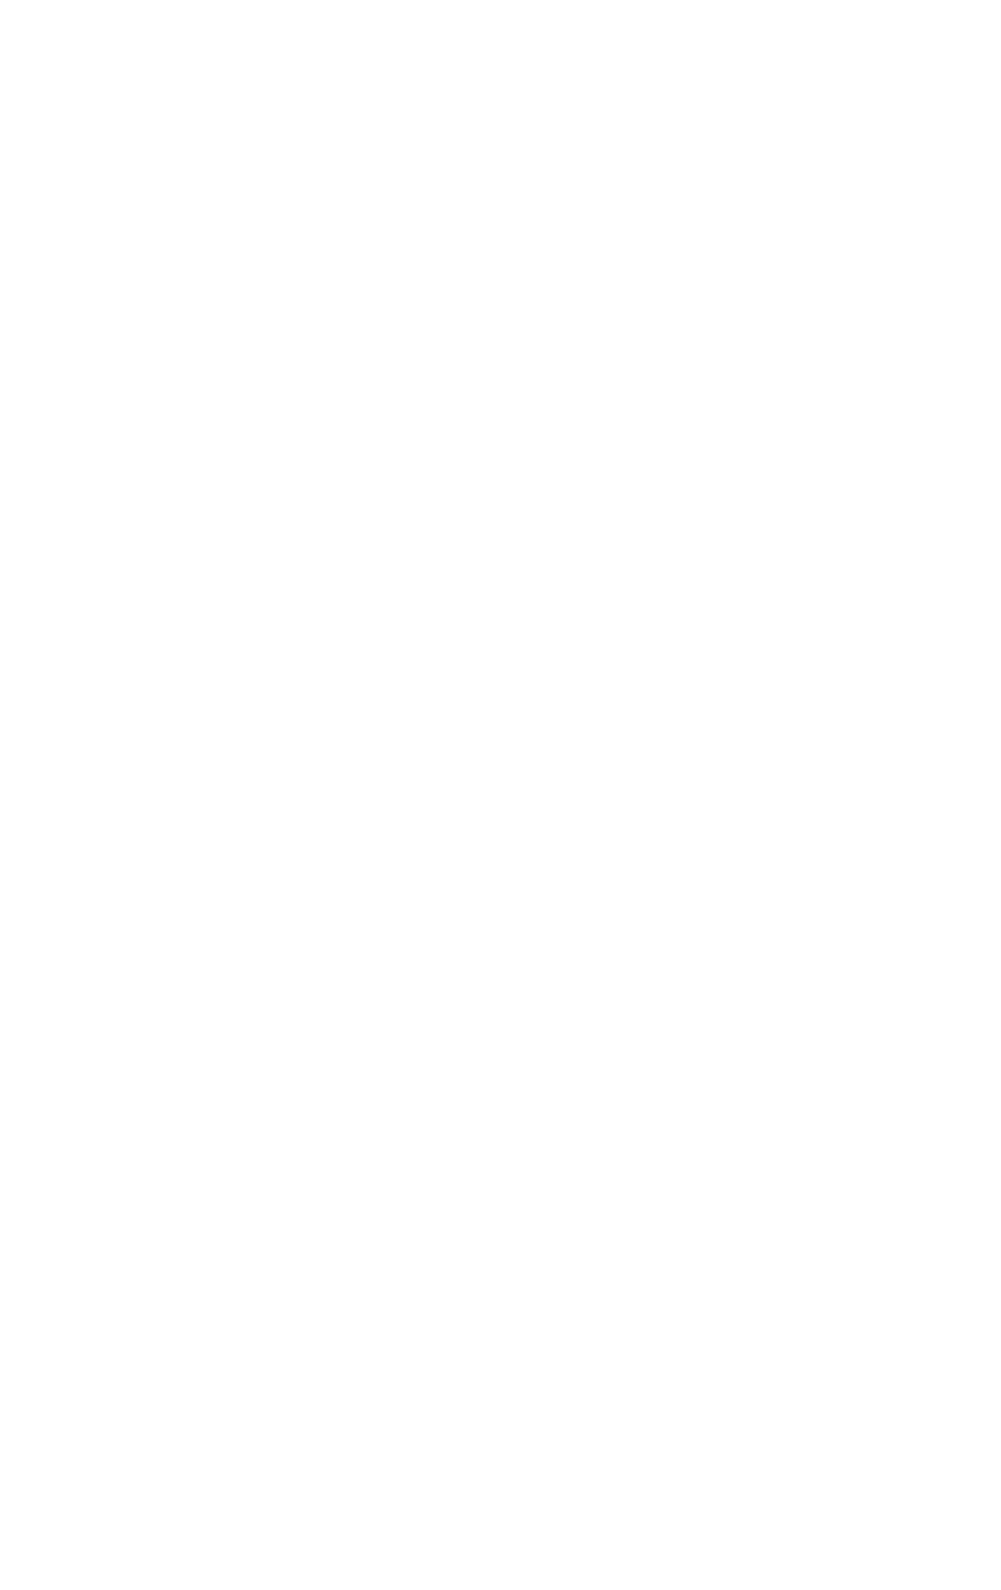 Kate Logo - Kate Strong - Entrepreneur mentor, business coach, speaker ...